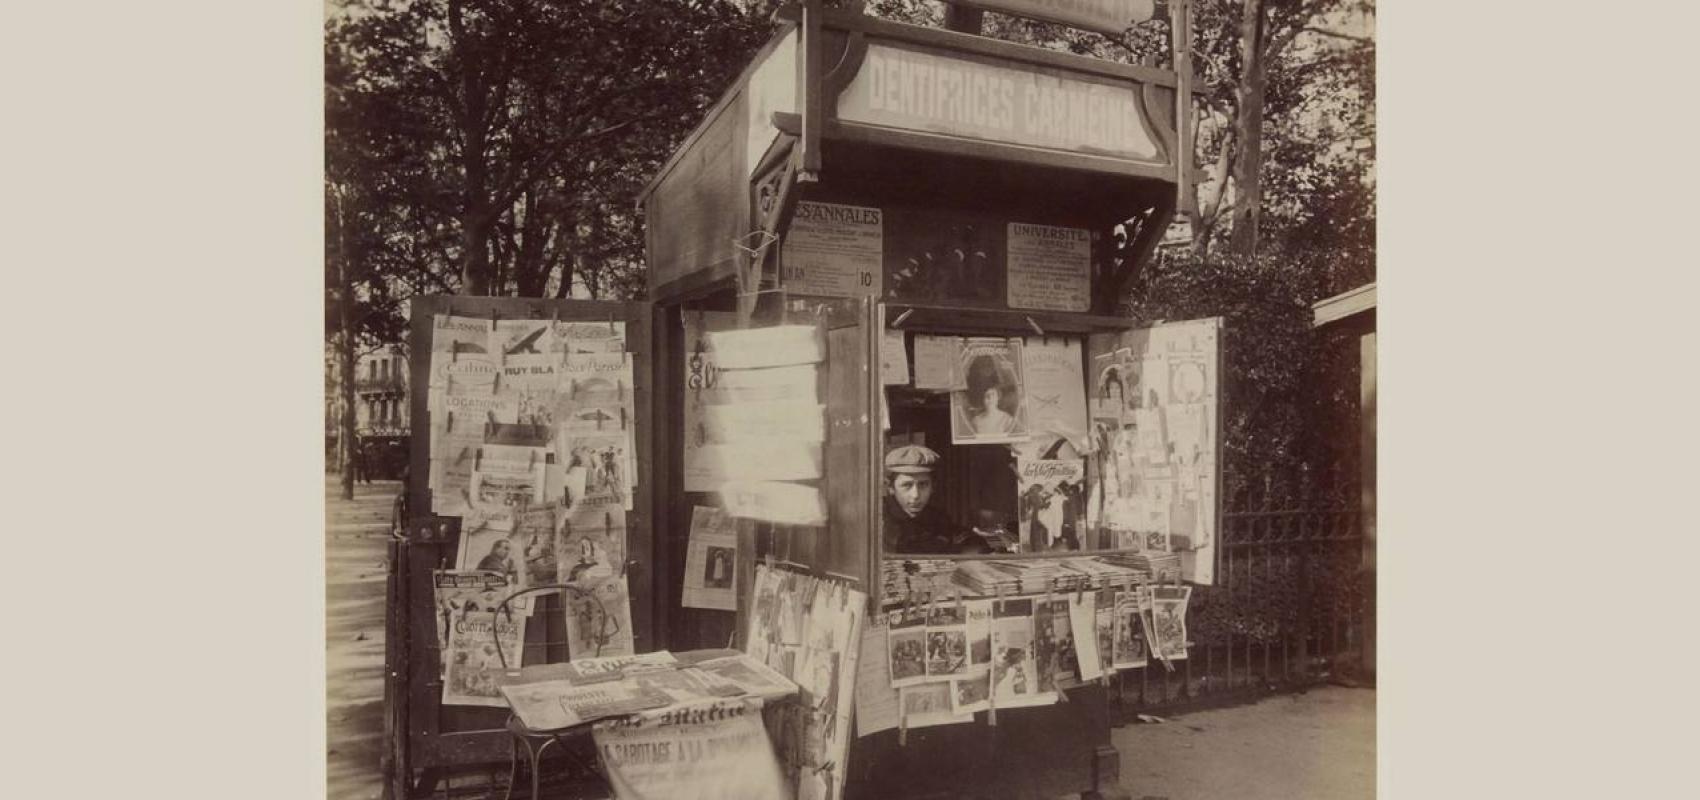 Kiosque à journaux, square du Bon Marché, photographie d'Atget -  - BnF, département des Estampes et de la photographie